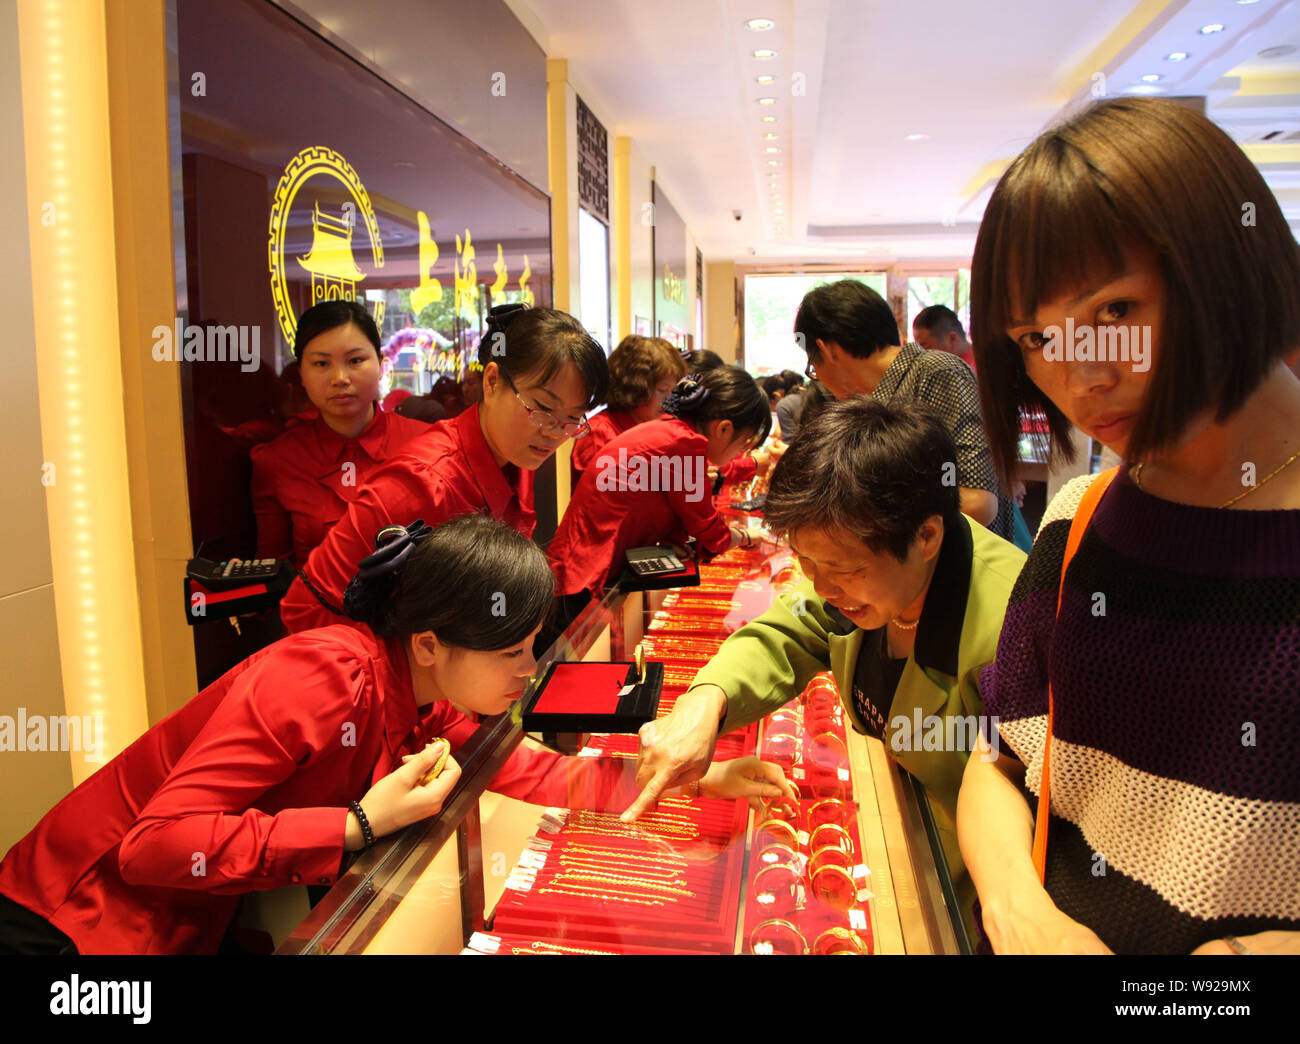 Les clients chinois acheter de l'or à ornements un magasin de bijoux, lors de la fête de la ville de Shaoxing, dans la province du Zhejiang, Chine de l'est 29 Apirl 2013. Banque D'Images